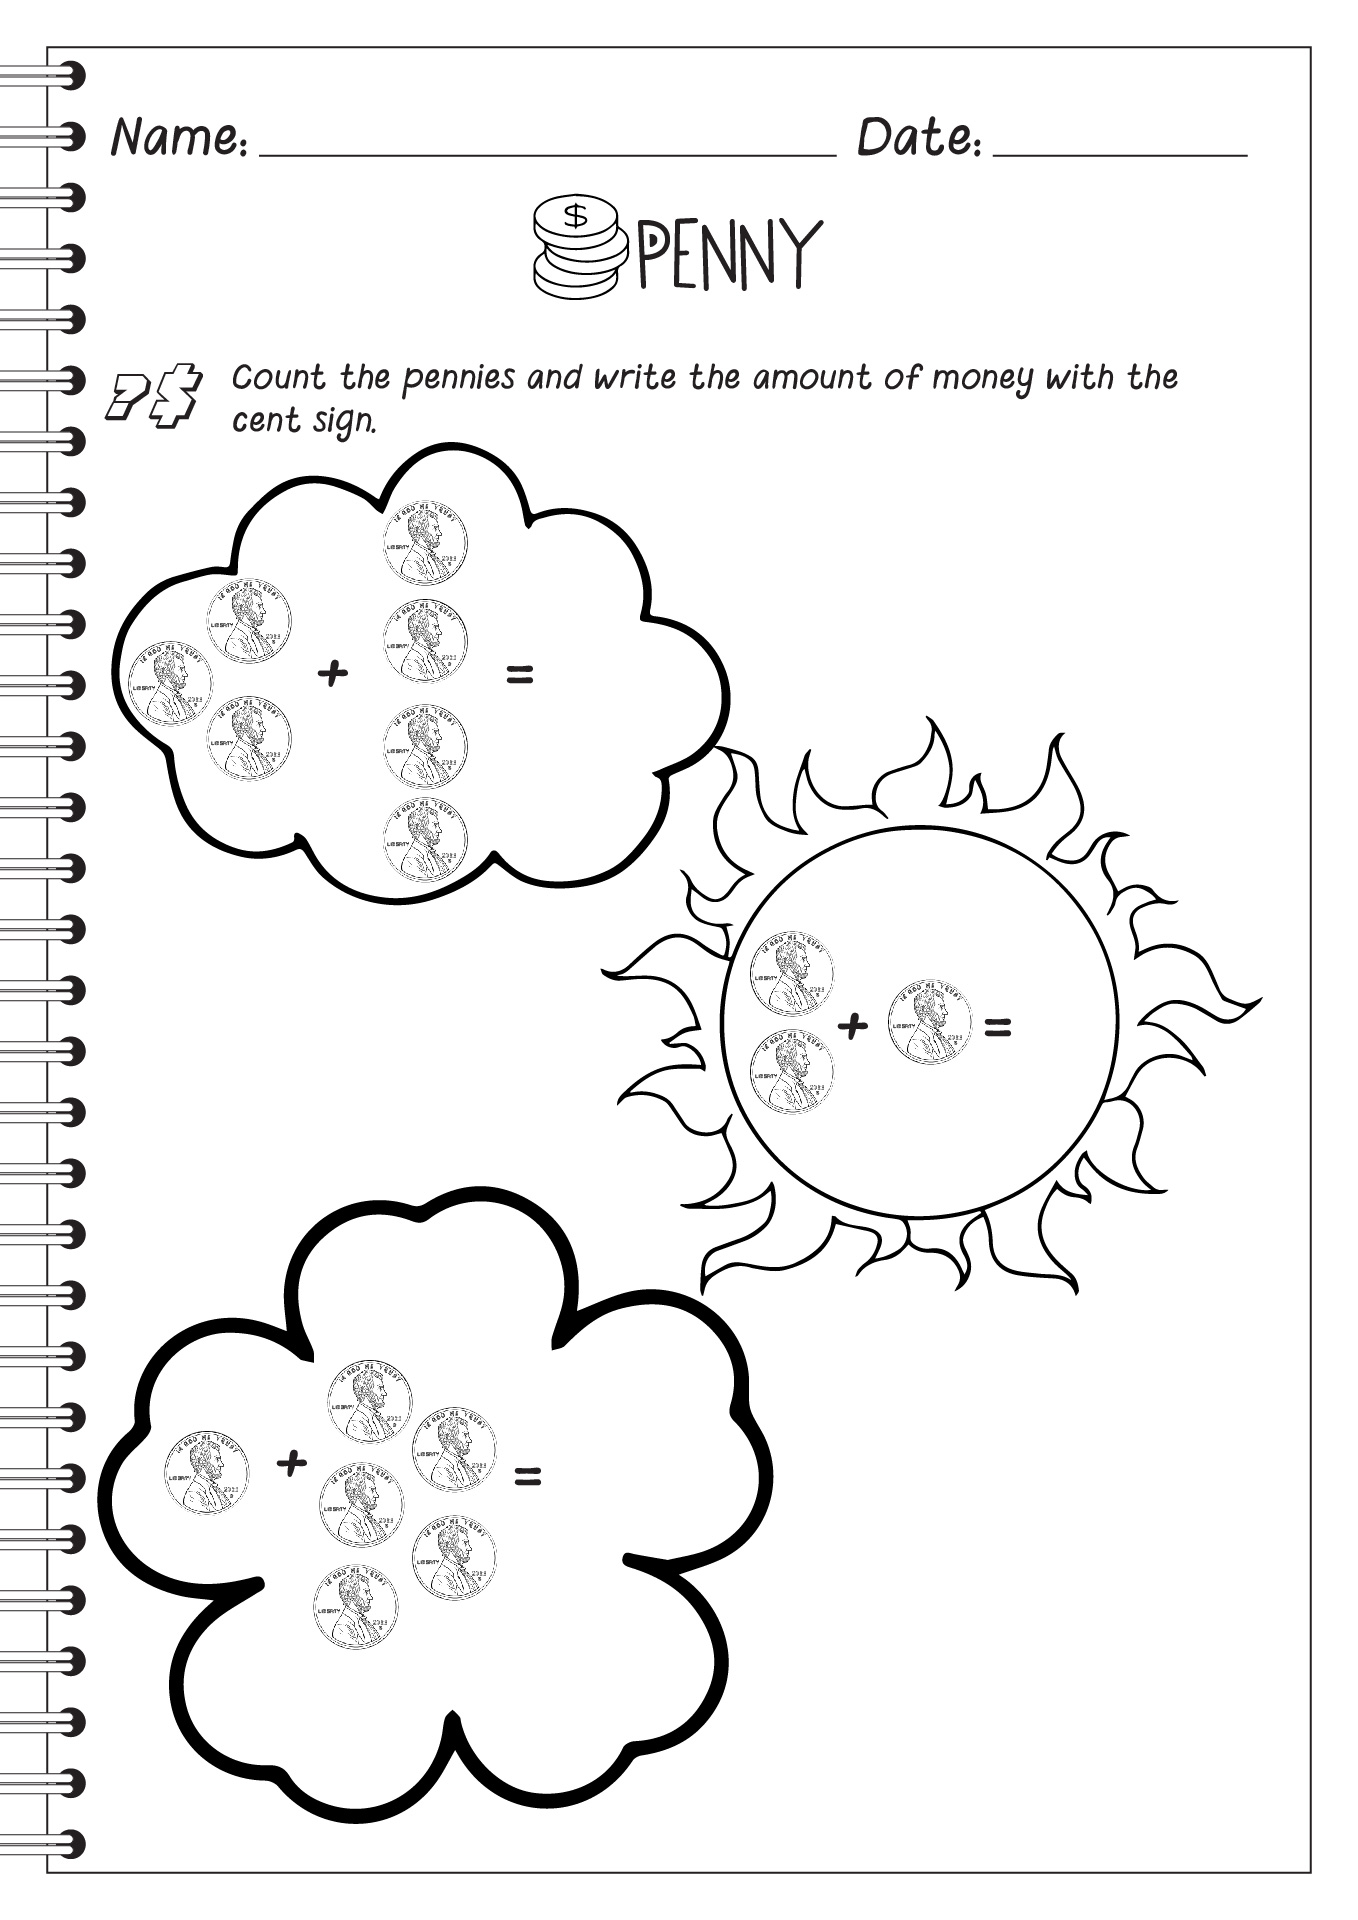 14 Best Images of Penny Worksheets For Kindergarten - Adding Coins